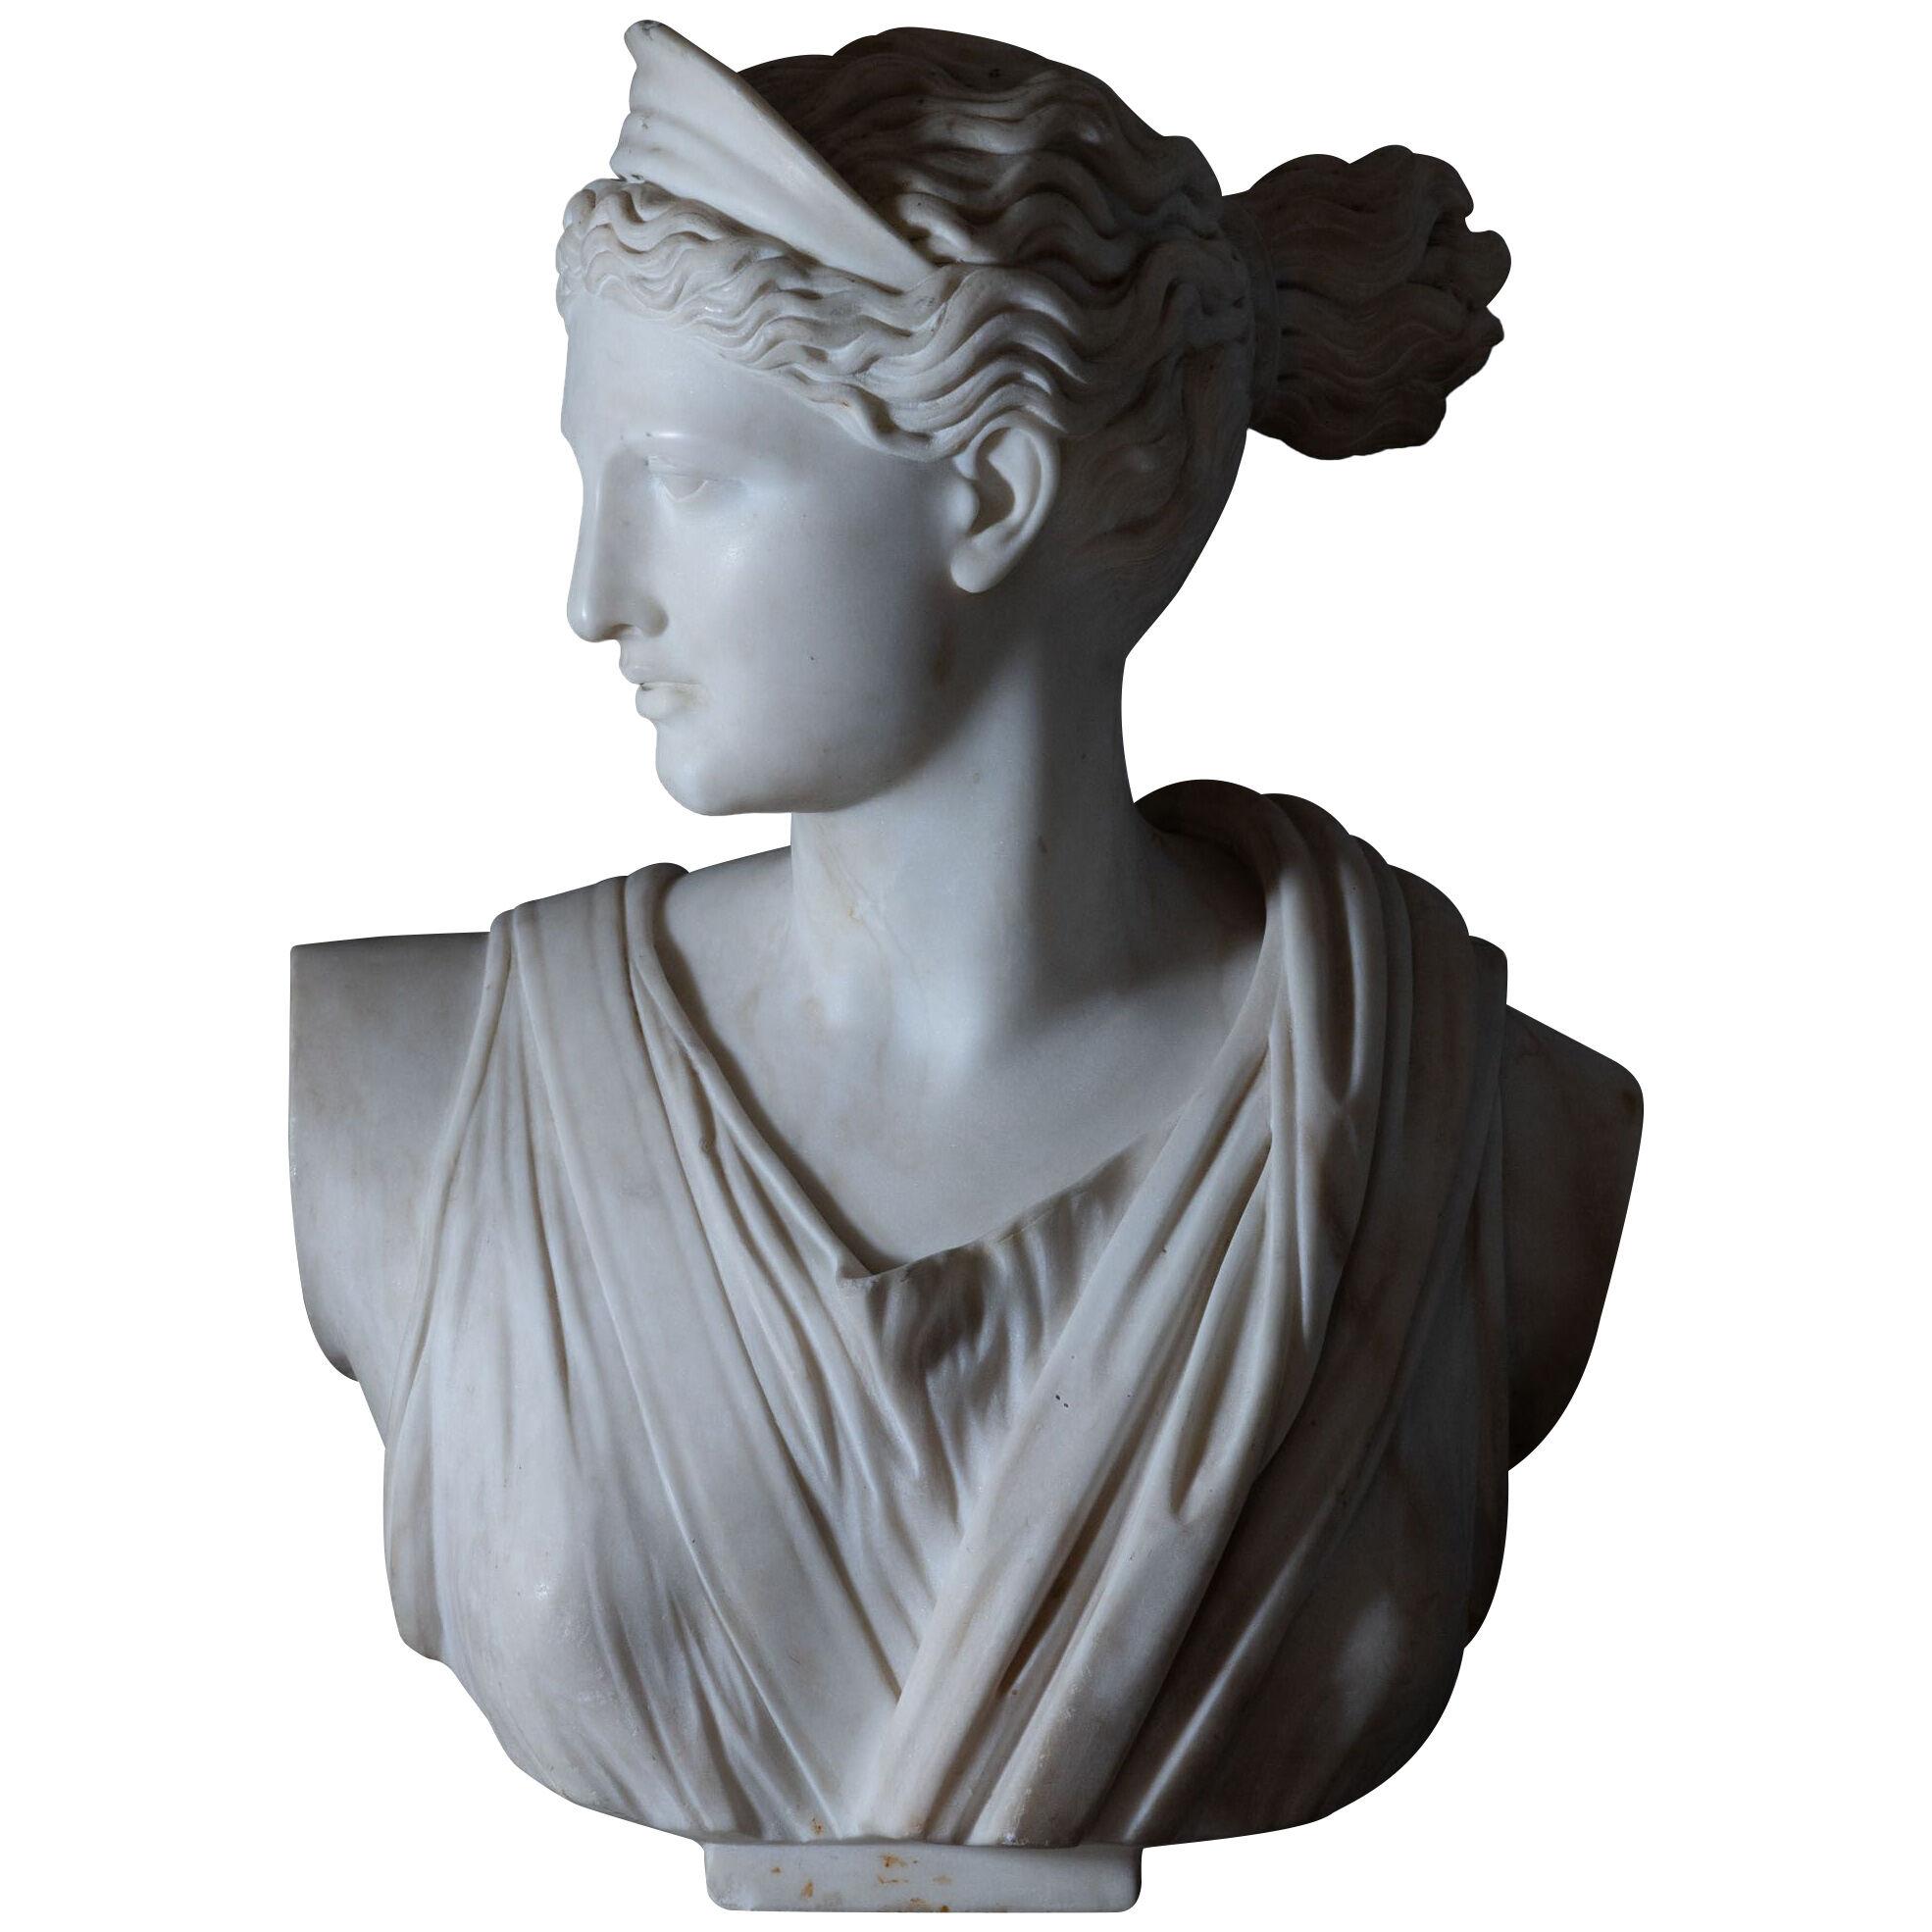 Ferdinand Vichi (Italy, 1875-1945), Bust of Diana